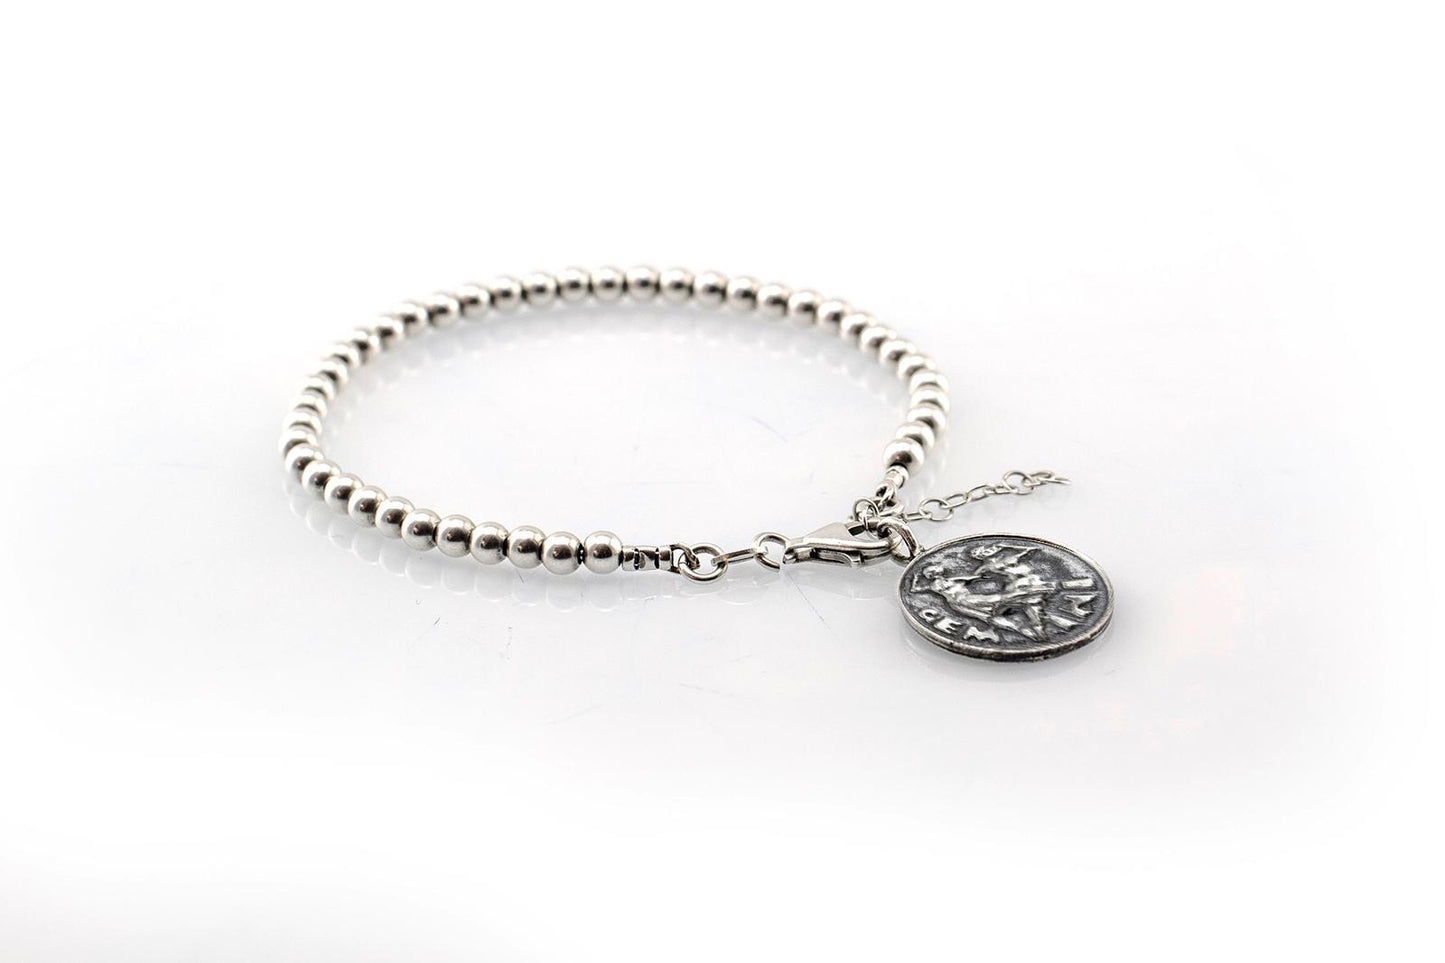 Gemini medallion with a Bead Bracelet -Zodiac jewelry -One of kind jewelry